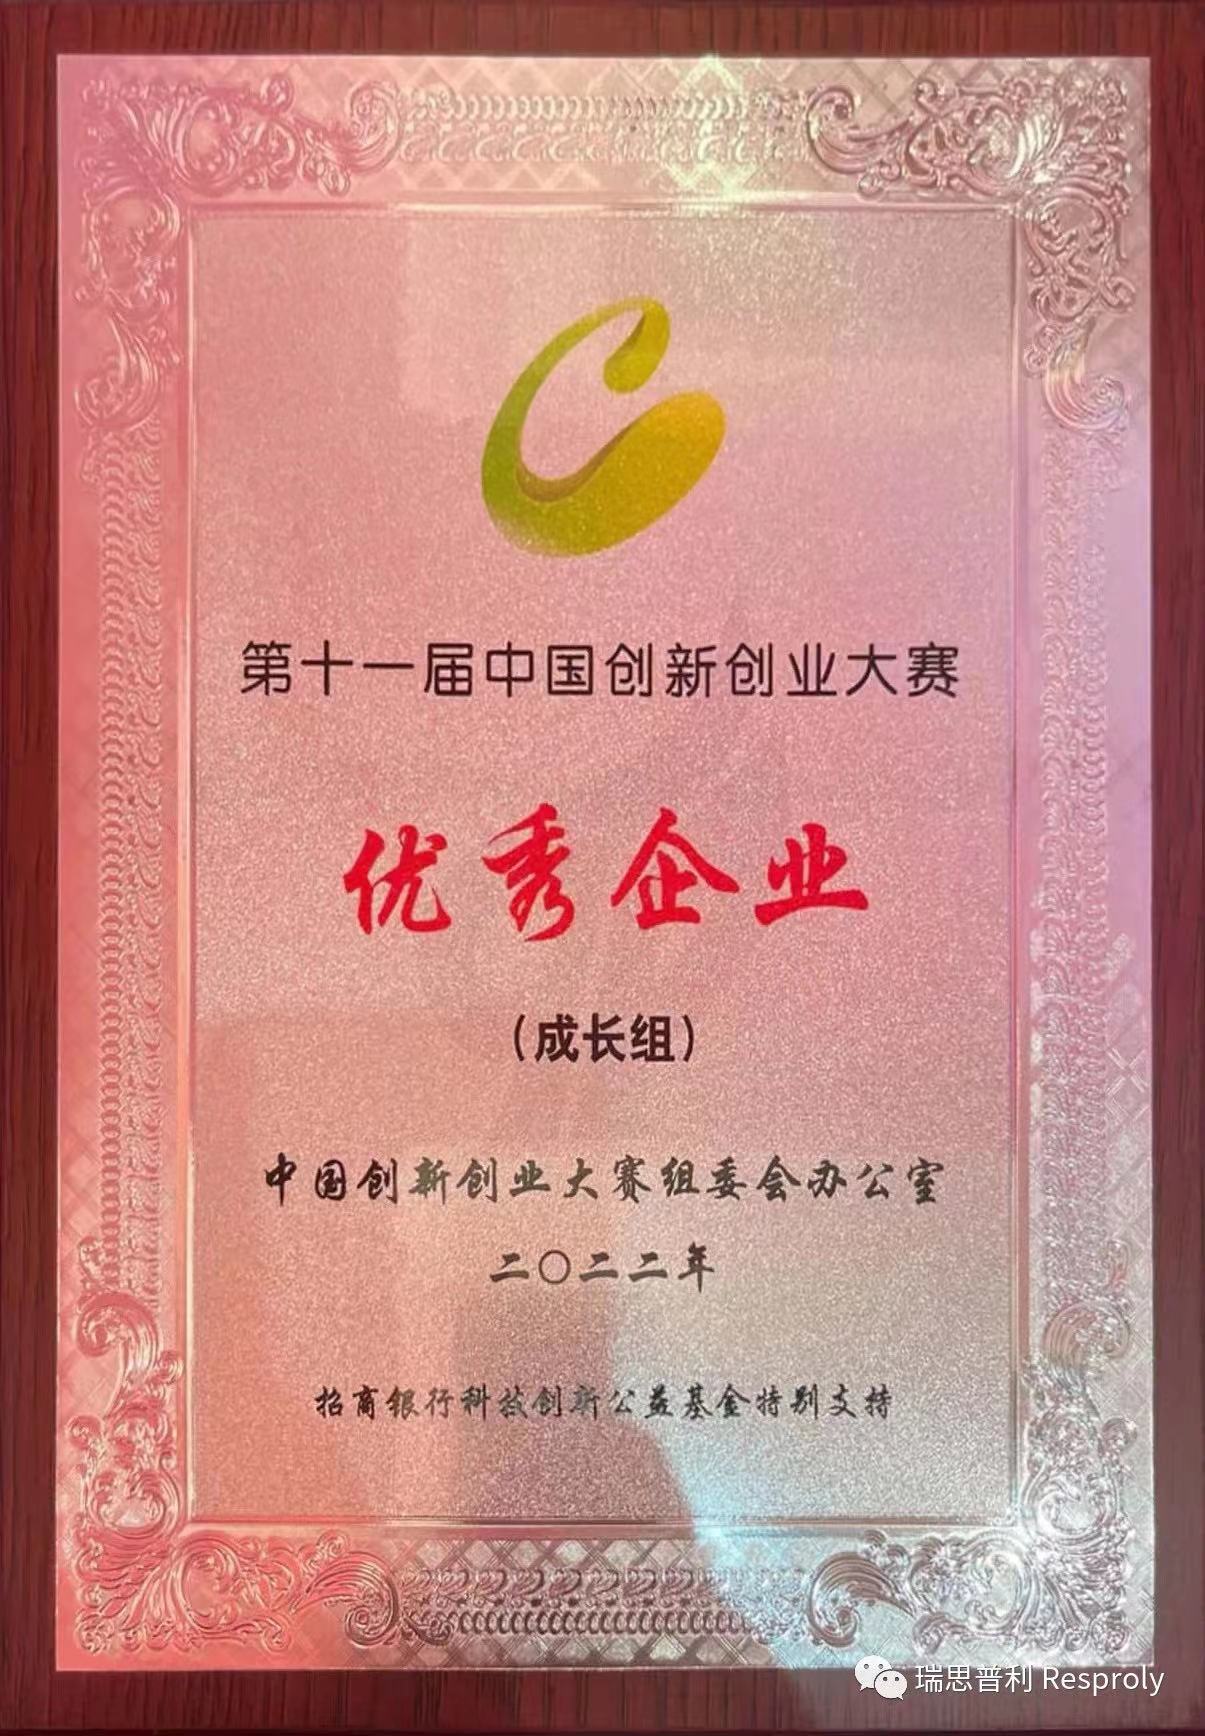 三年一小步丨瑞思普利获中国创新创业大赛（广东赛区）一等奖、全国赛优秀企业